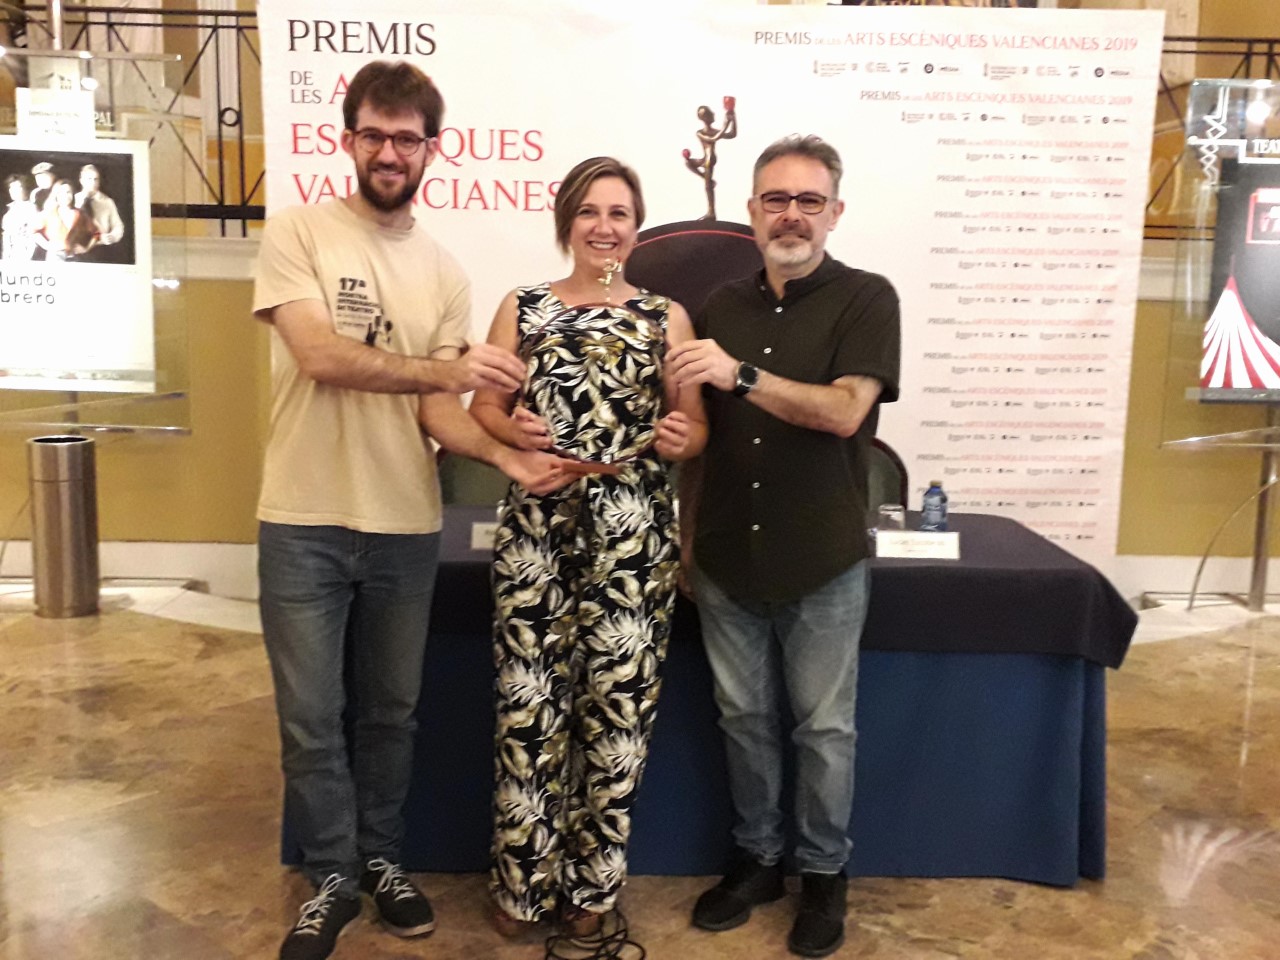 Rodolf Sirera recibirá el Premio de Honor de las Artes Escénicas Valencianas 2019